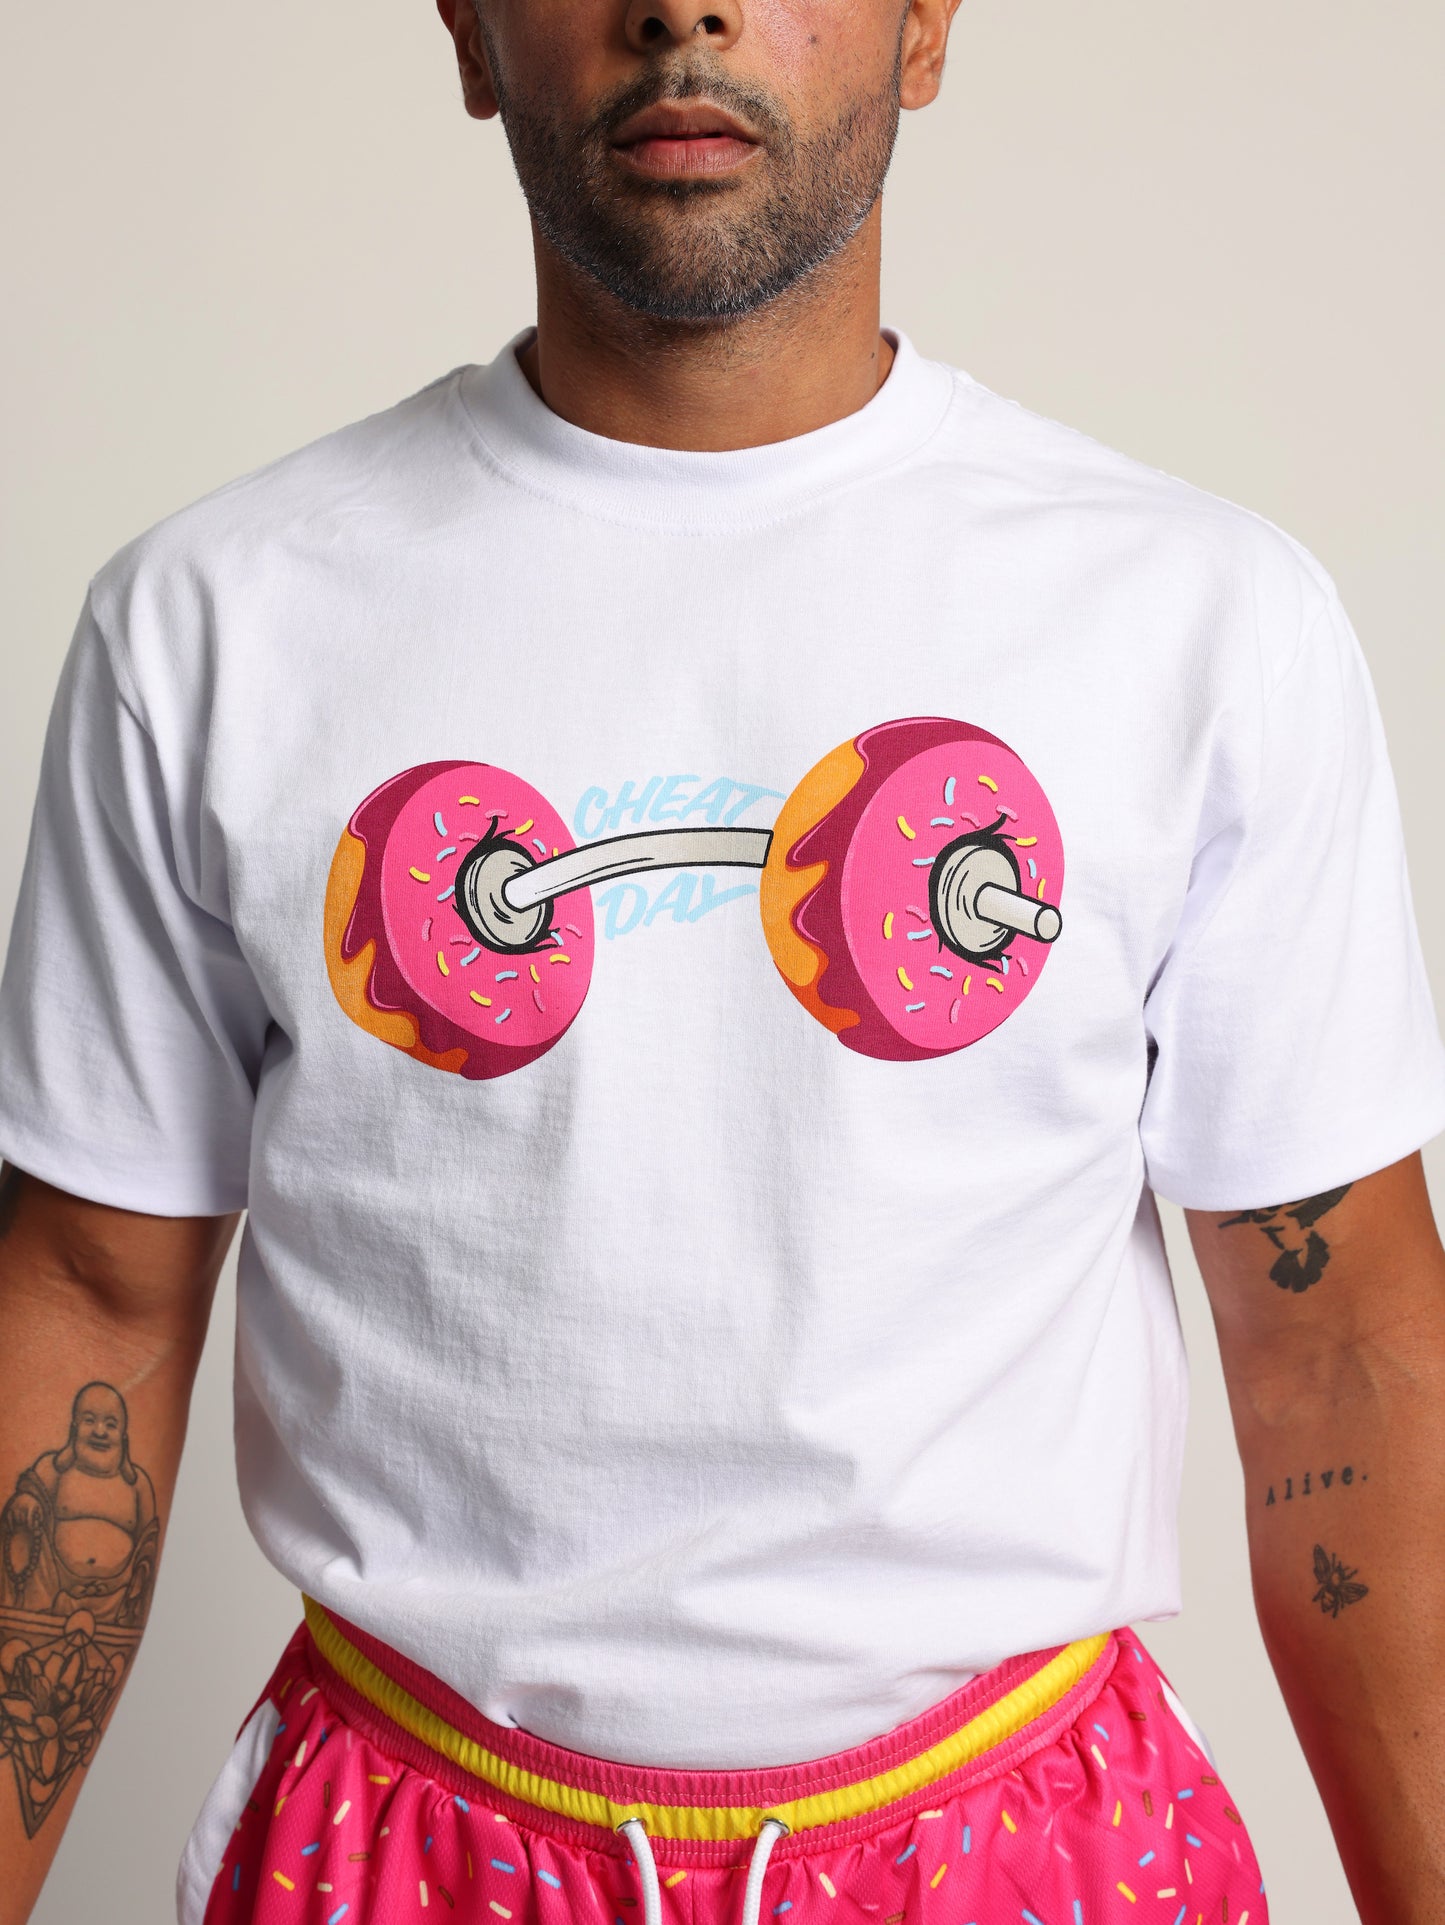 Sprinkle Shorts & Barbell Donut Shirt Bundle